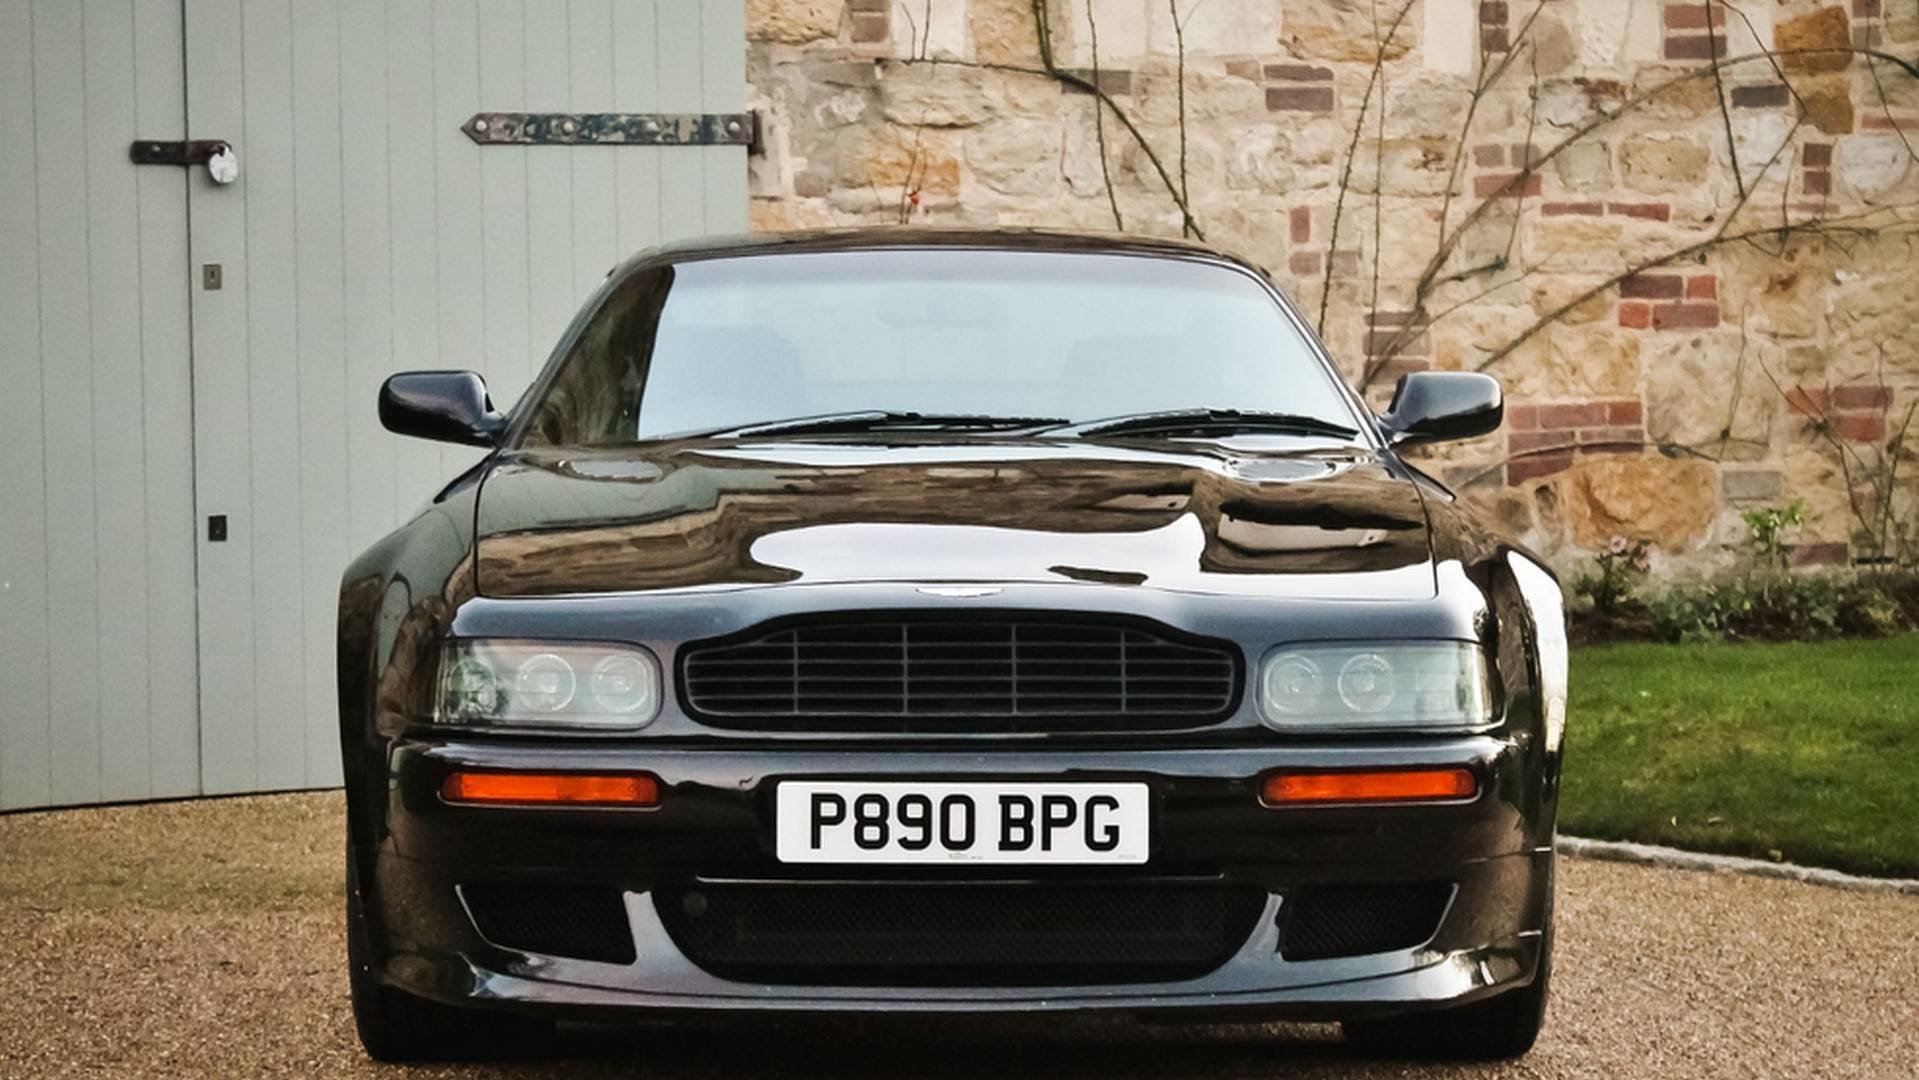 Aston Martin V8 Vantage V550, jehož prvním majitelem byl Sir Elton John